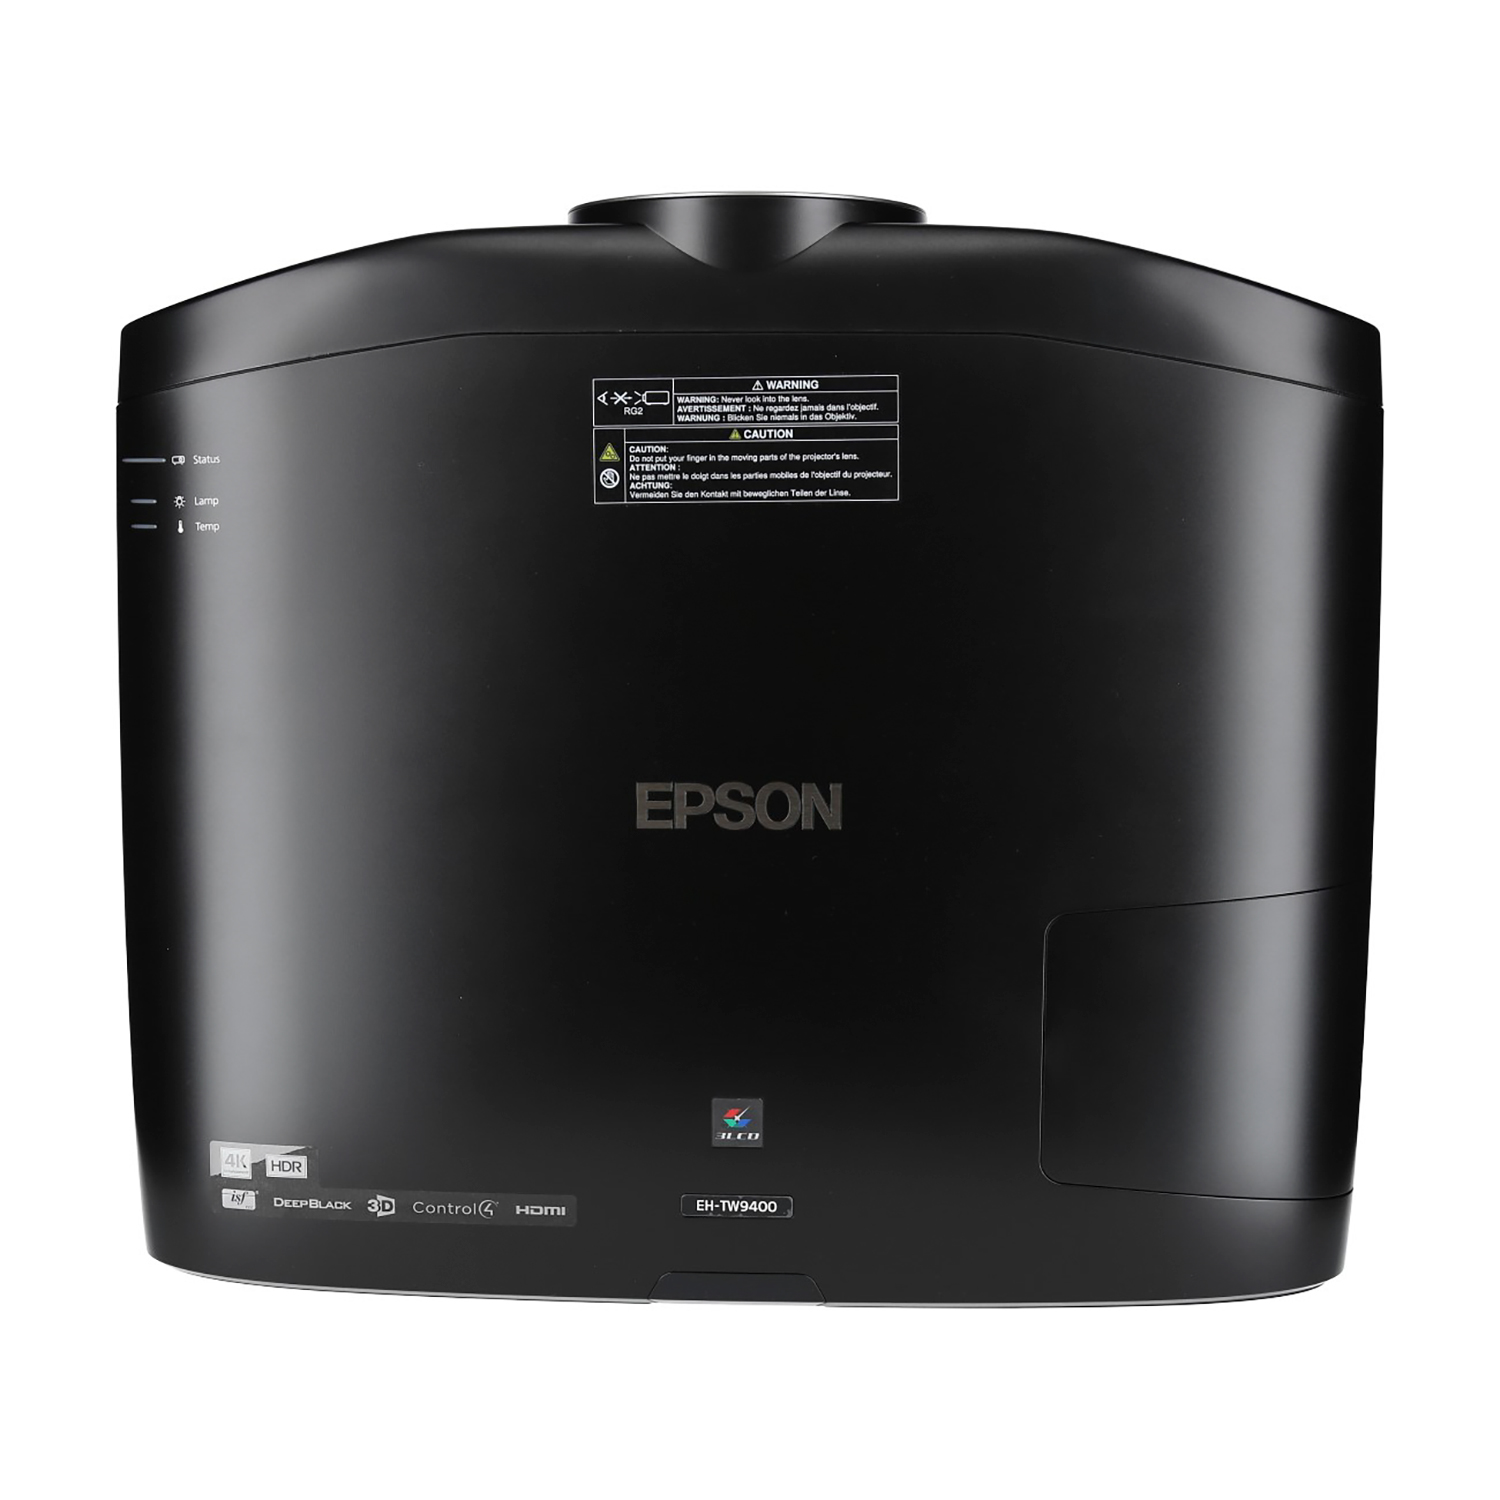 EPSON EH-TW9400 3D) Beamer(Full-HD